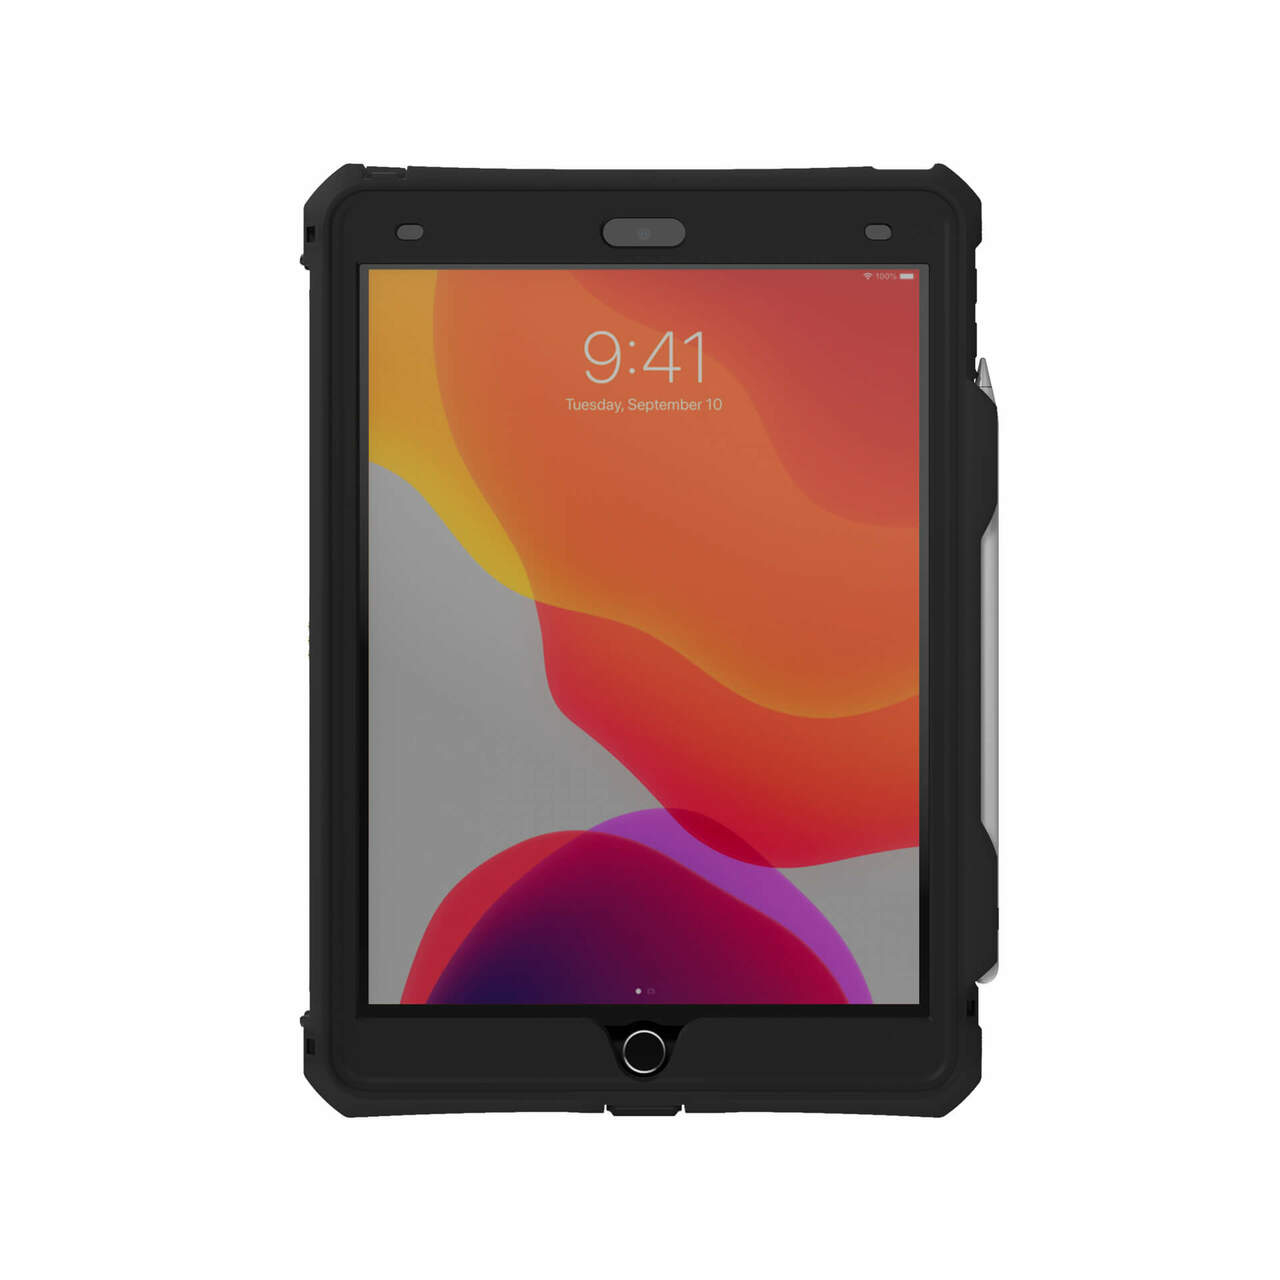 Étui de protection pour tablette compatible avec Apple iPad 10.2  (2019/2020/2021)